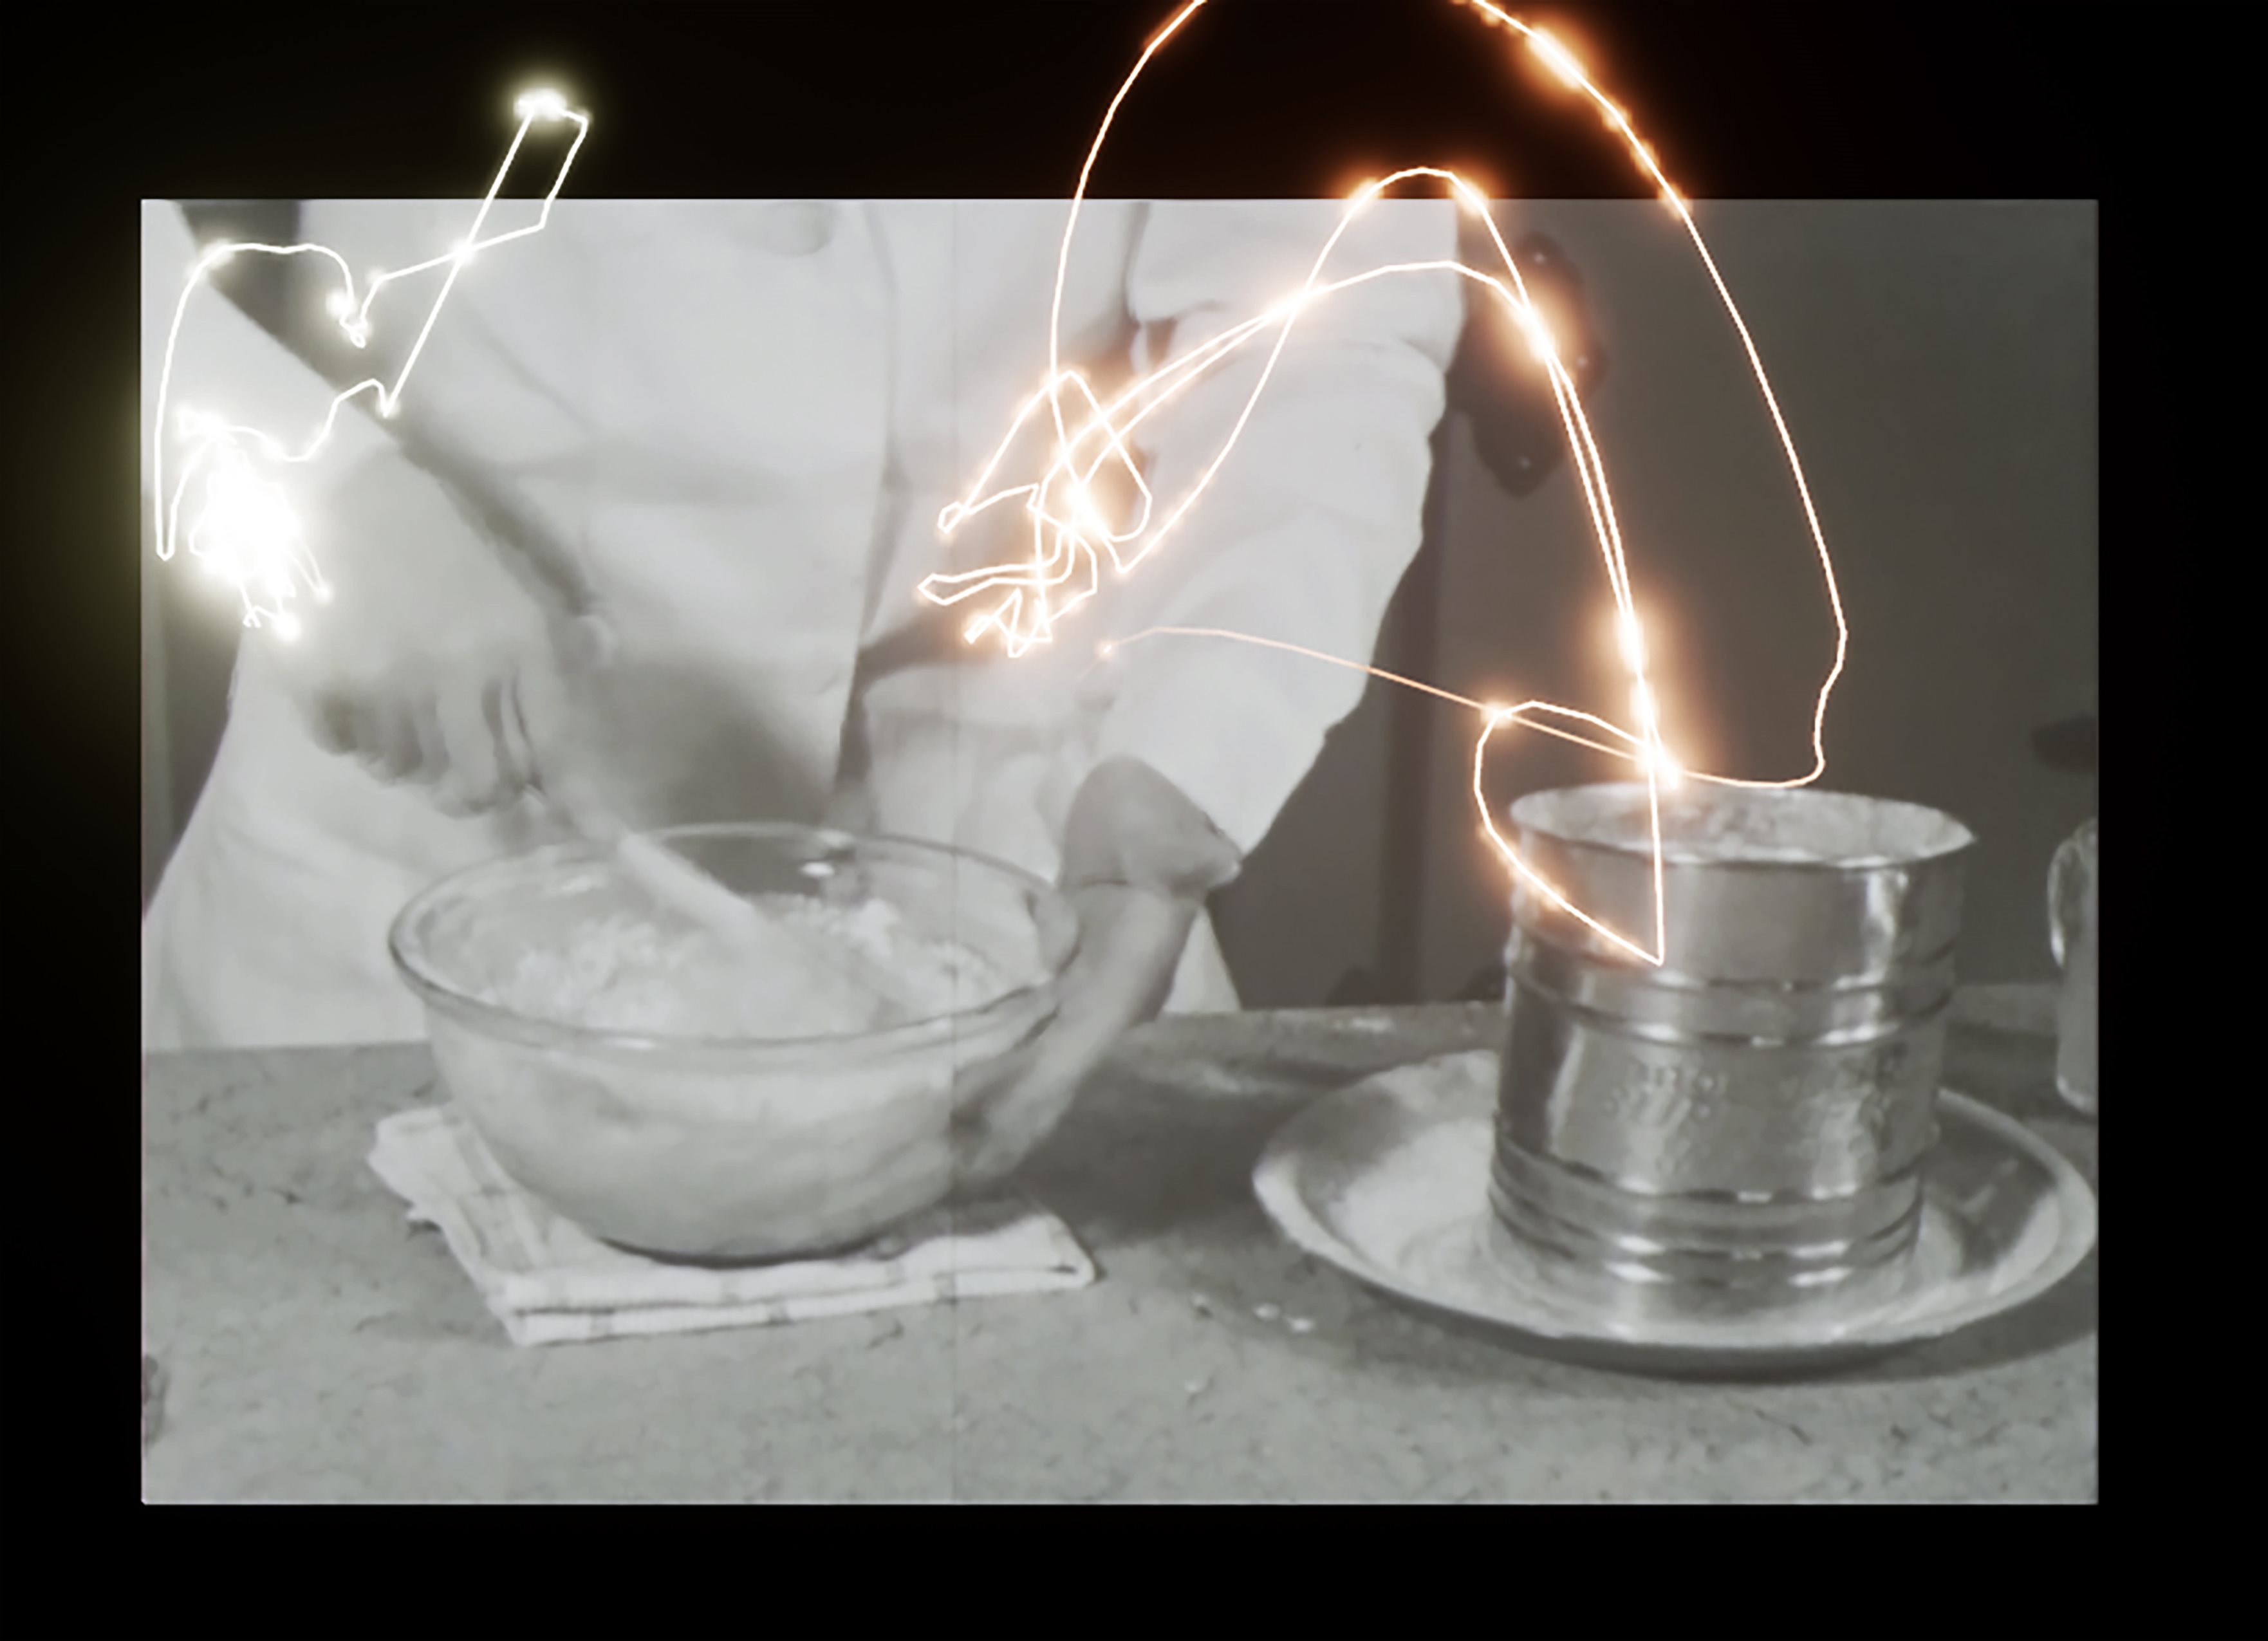 Image d'archives d'une personne brassant de la farine avec trajectoire lumineuse suivant chaque geste